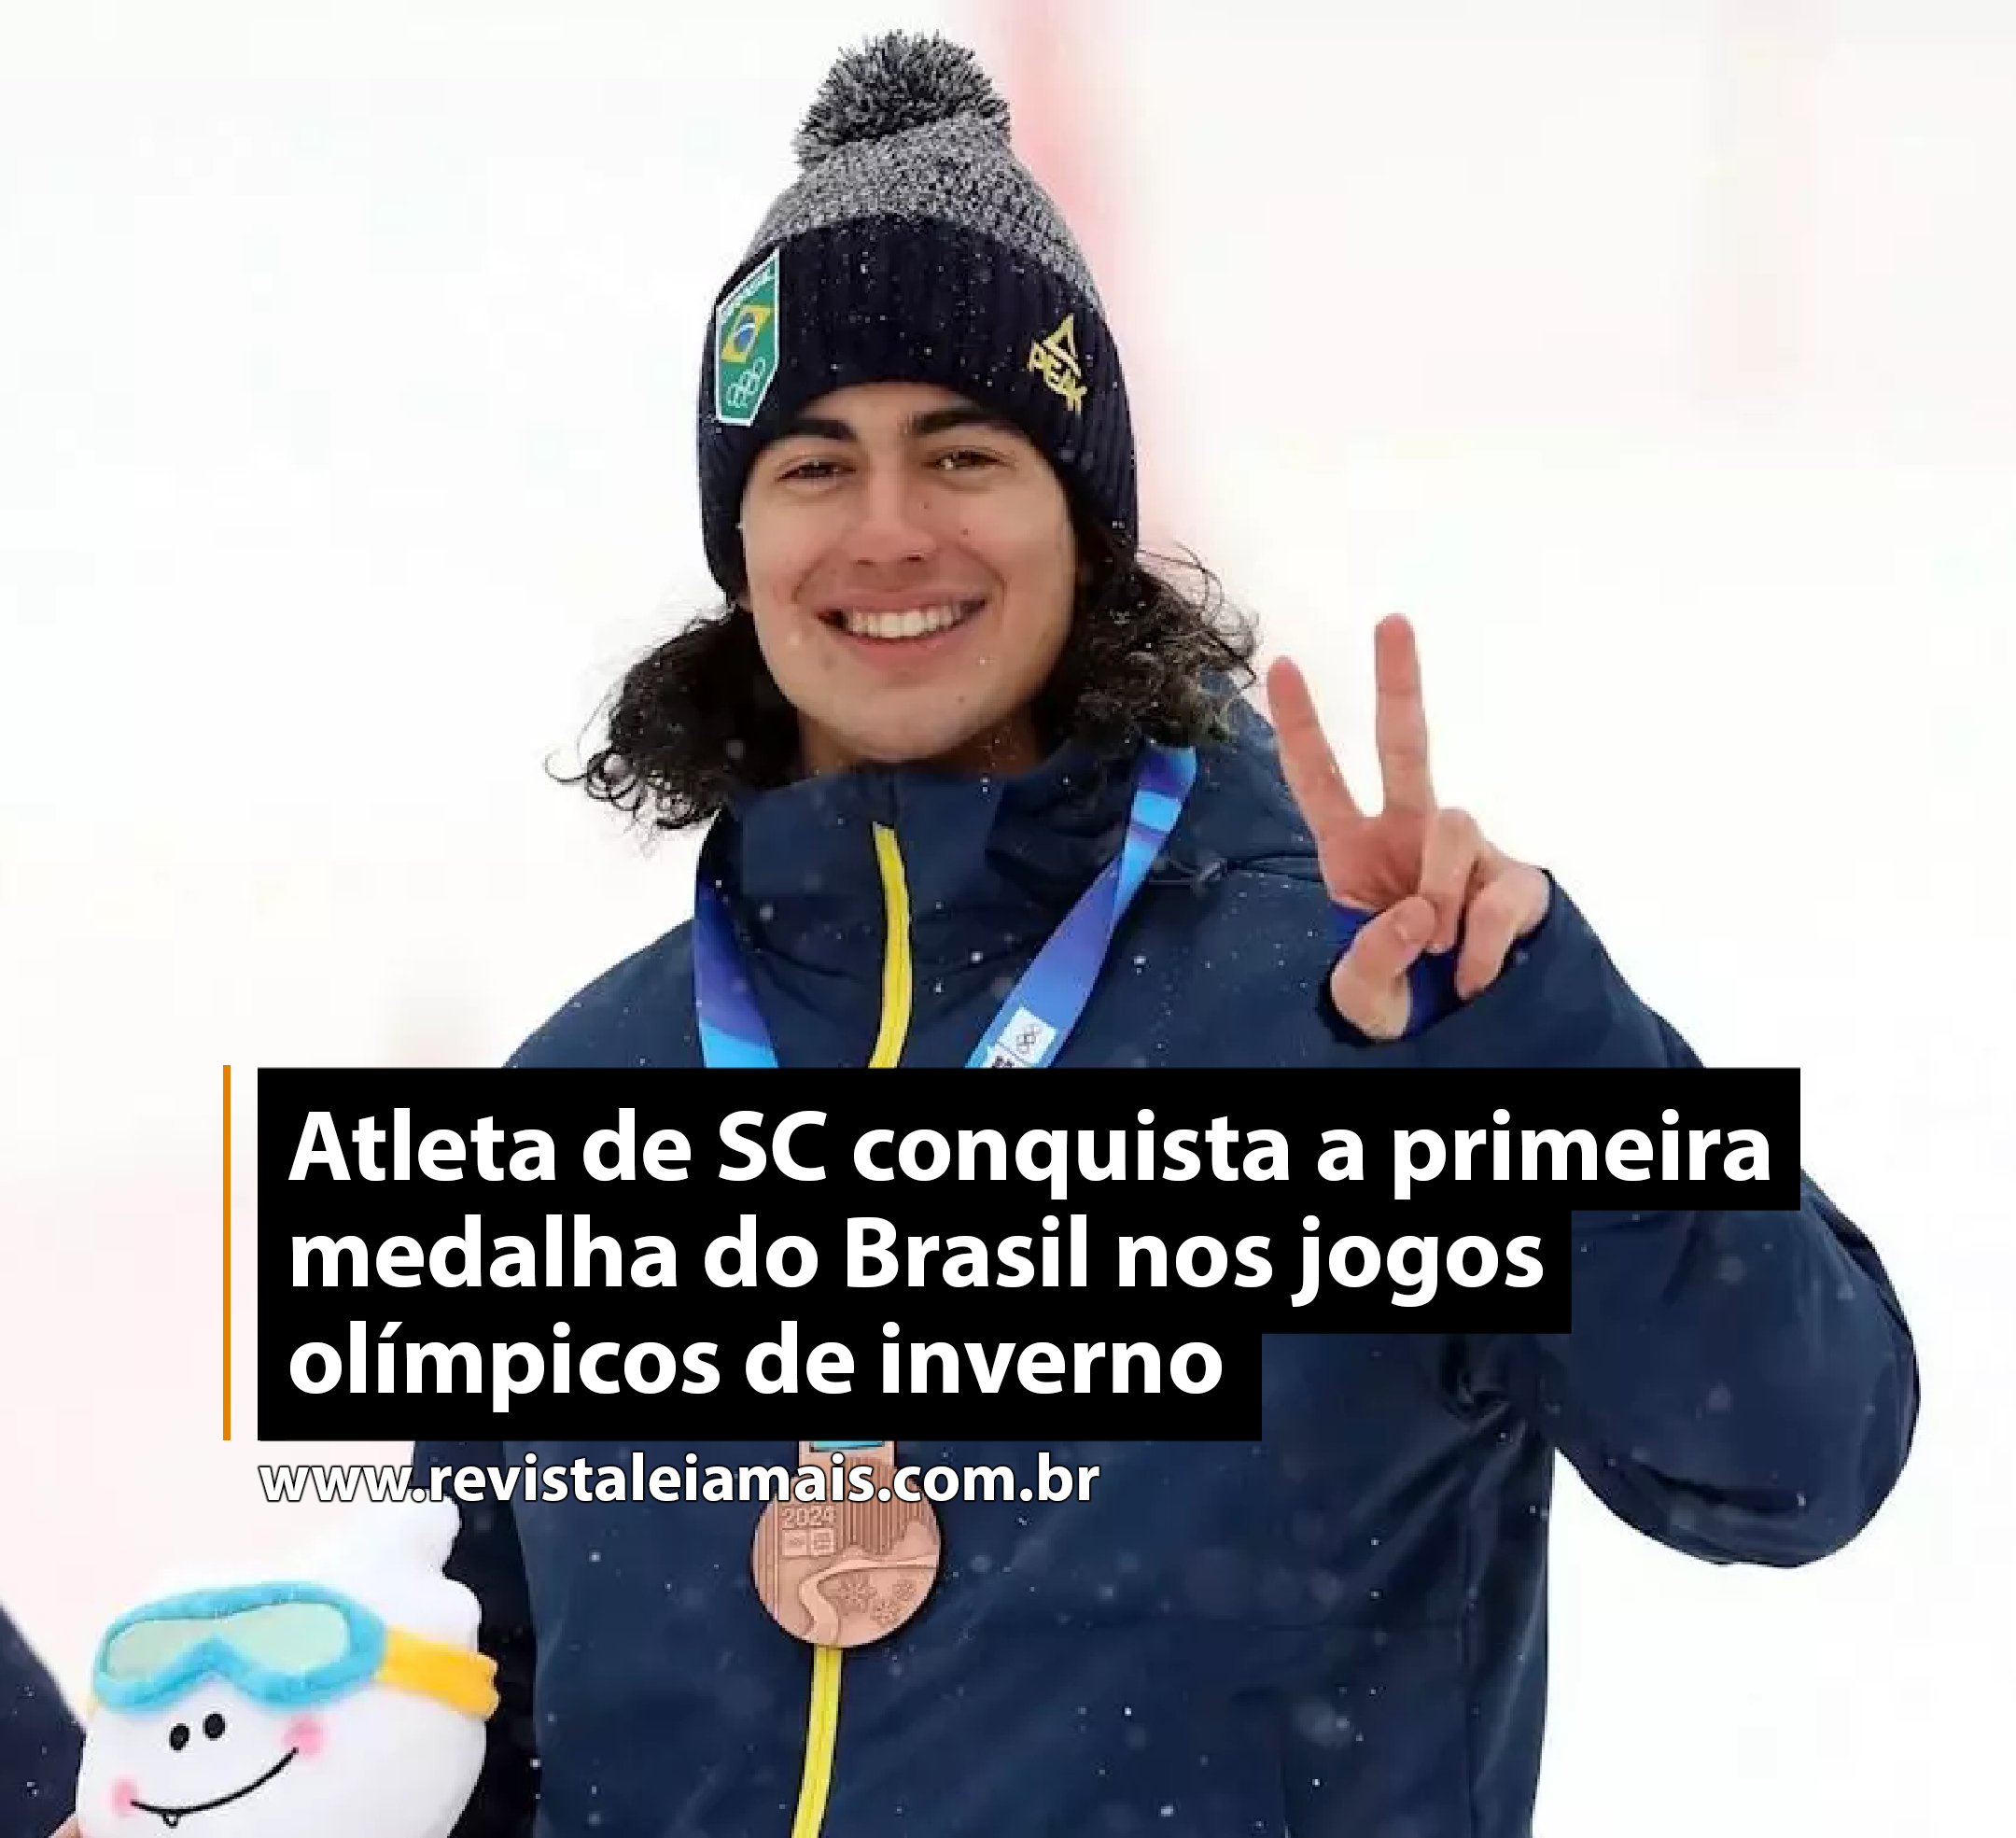 Atleta de SC conquista a primeira medalha do Brasil nos jogos olímpicos de inverno